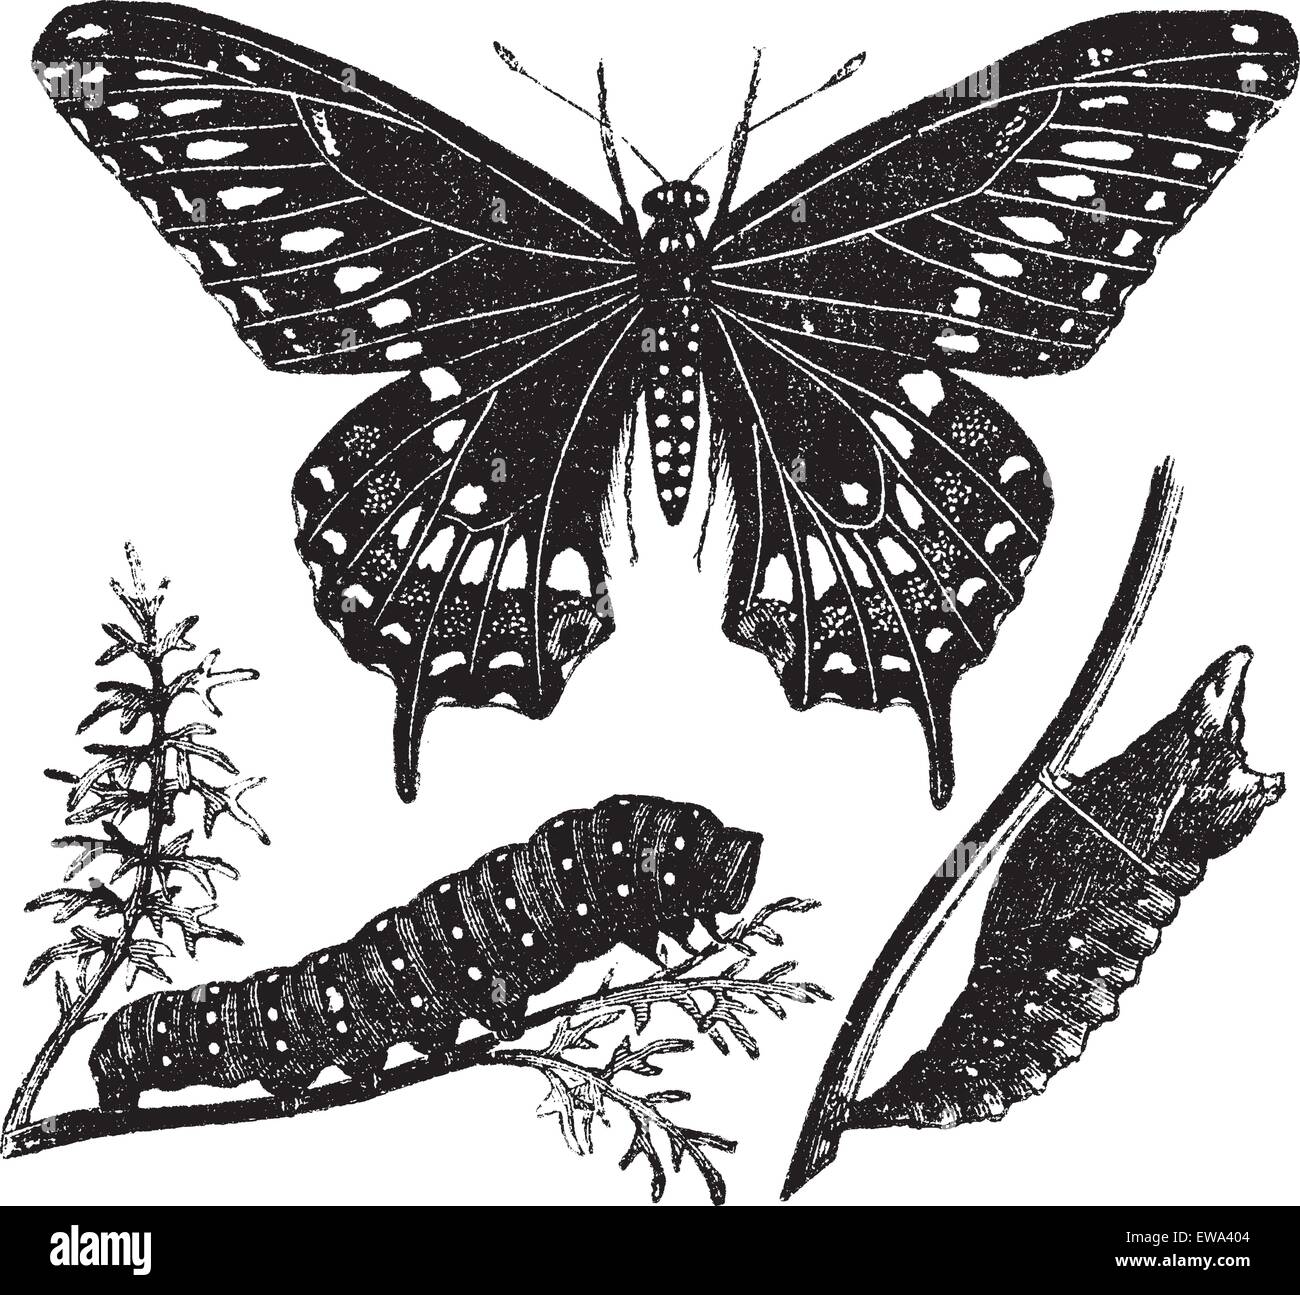 Nero a coda di rondine o a farfalla Papilio polyxenes, vintage illustrazioni incise. Trousset enciclopedia (1886 - 1891). Illustrazione Vettoriale